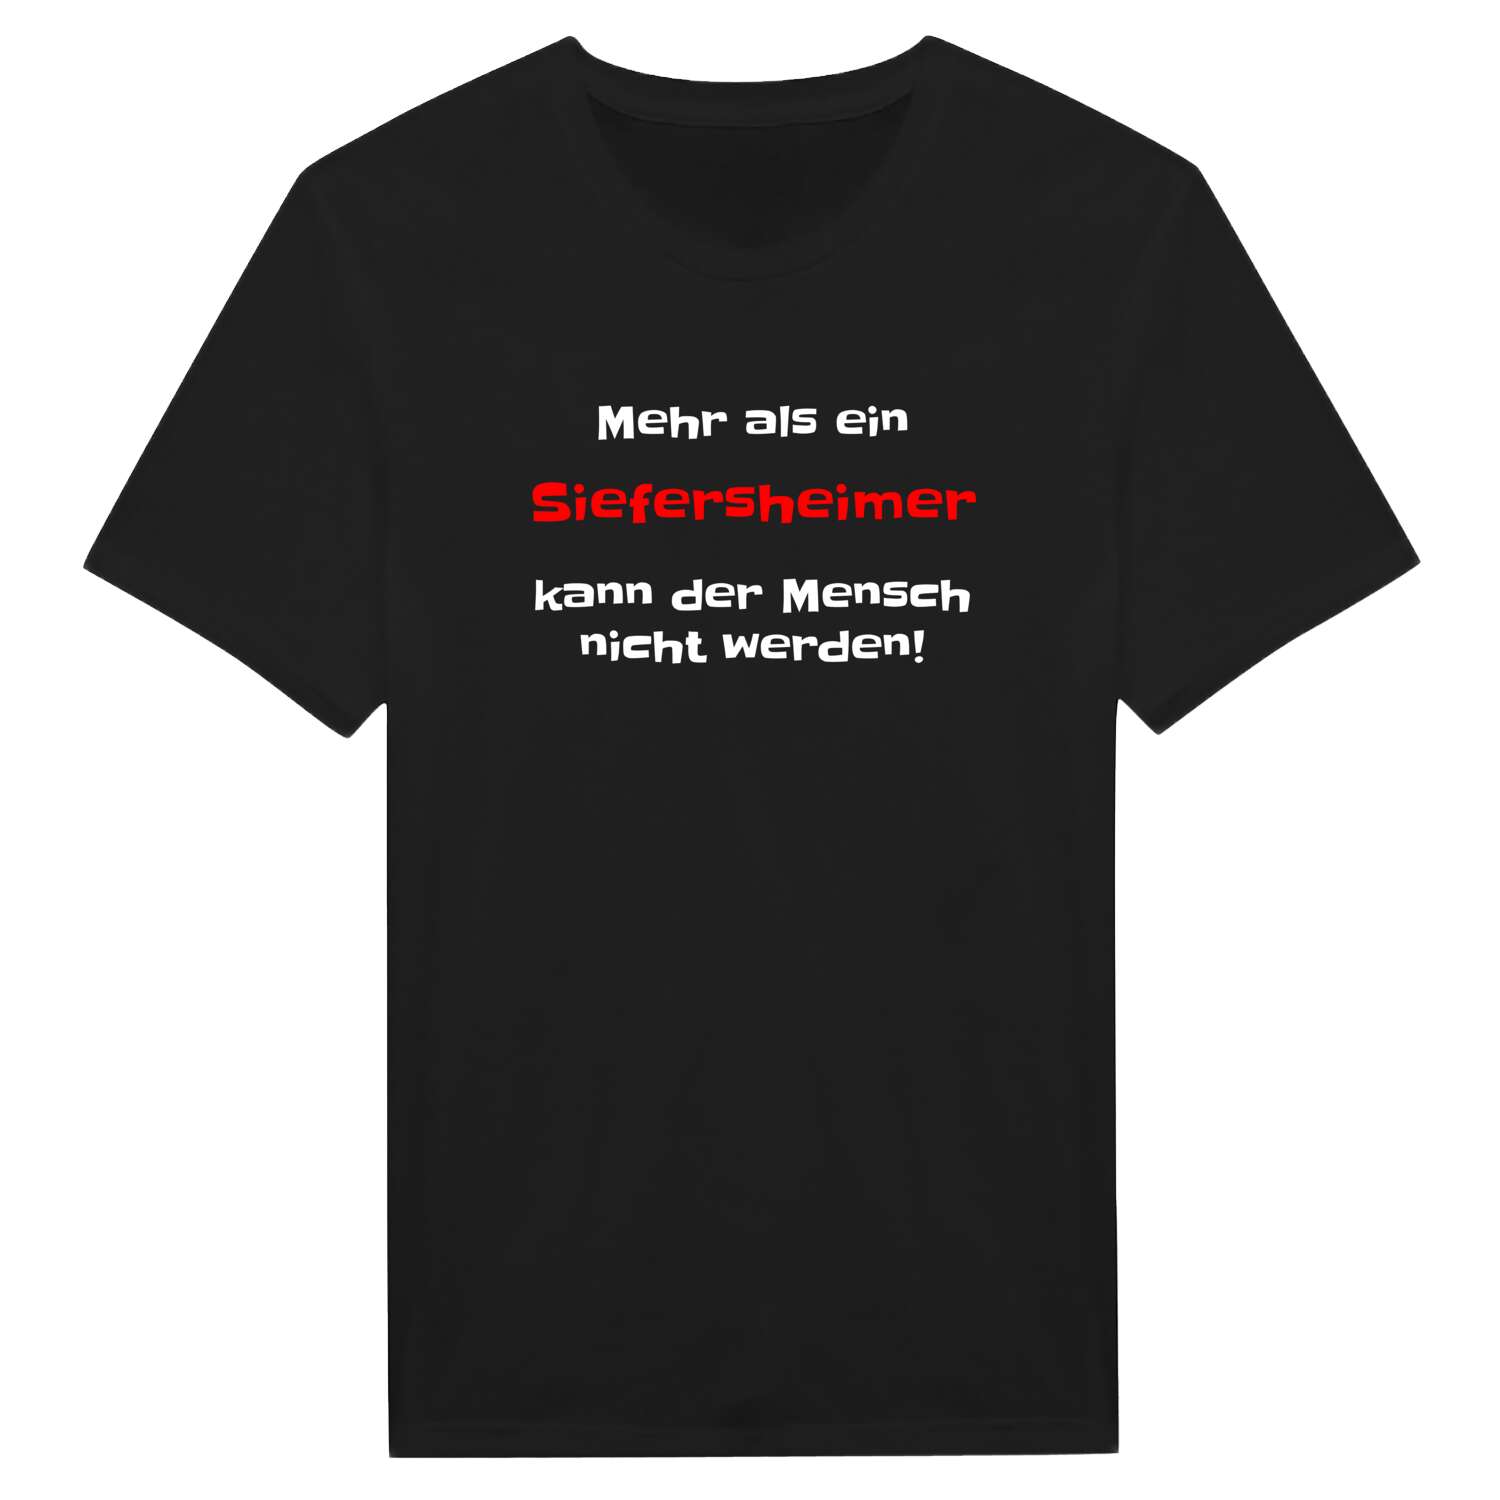 Siefersheim T-Shirt »Mehr als ein«